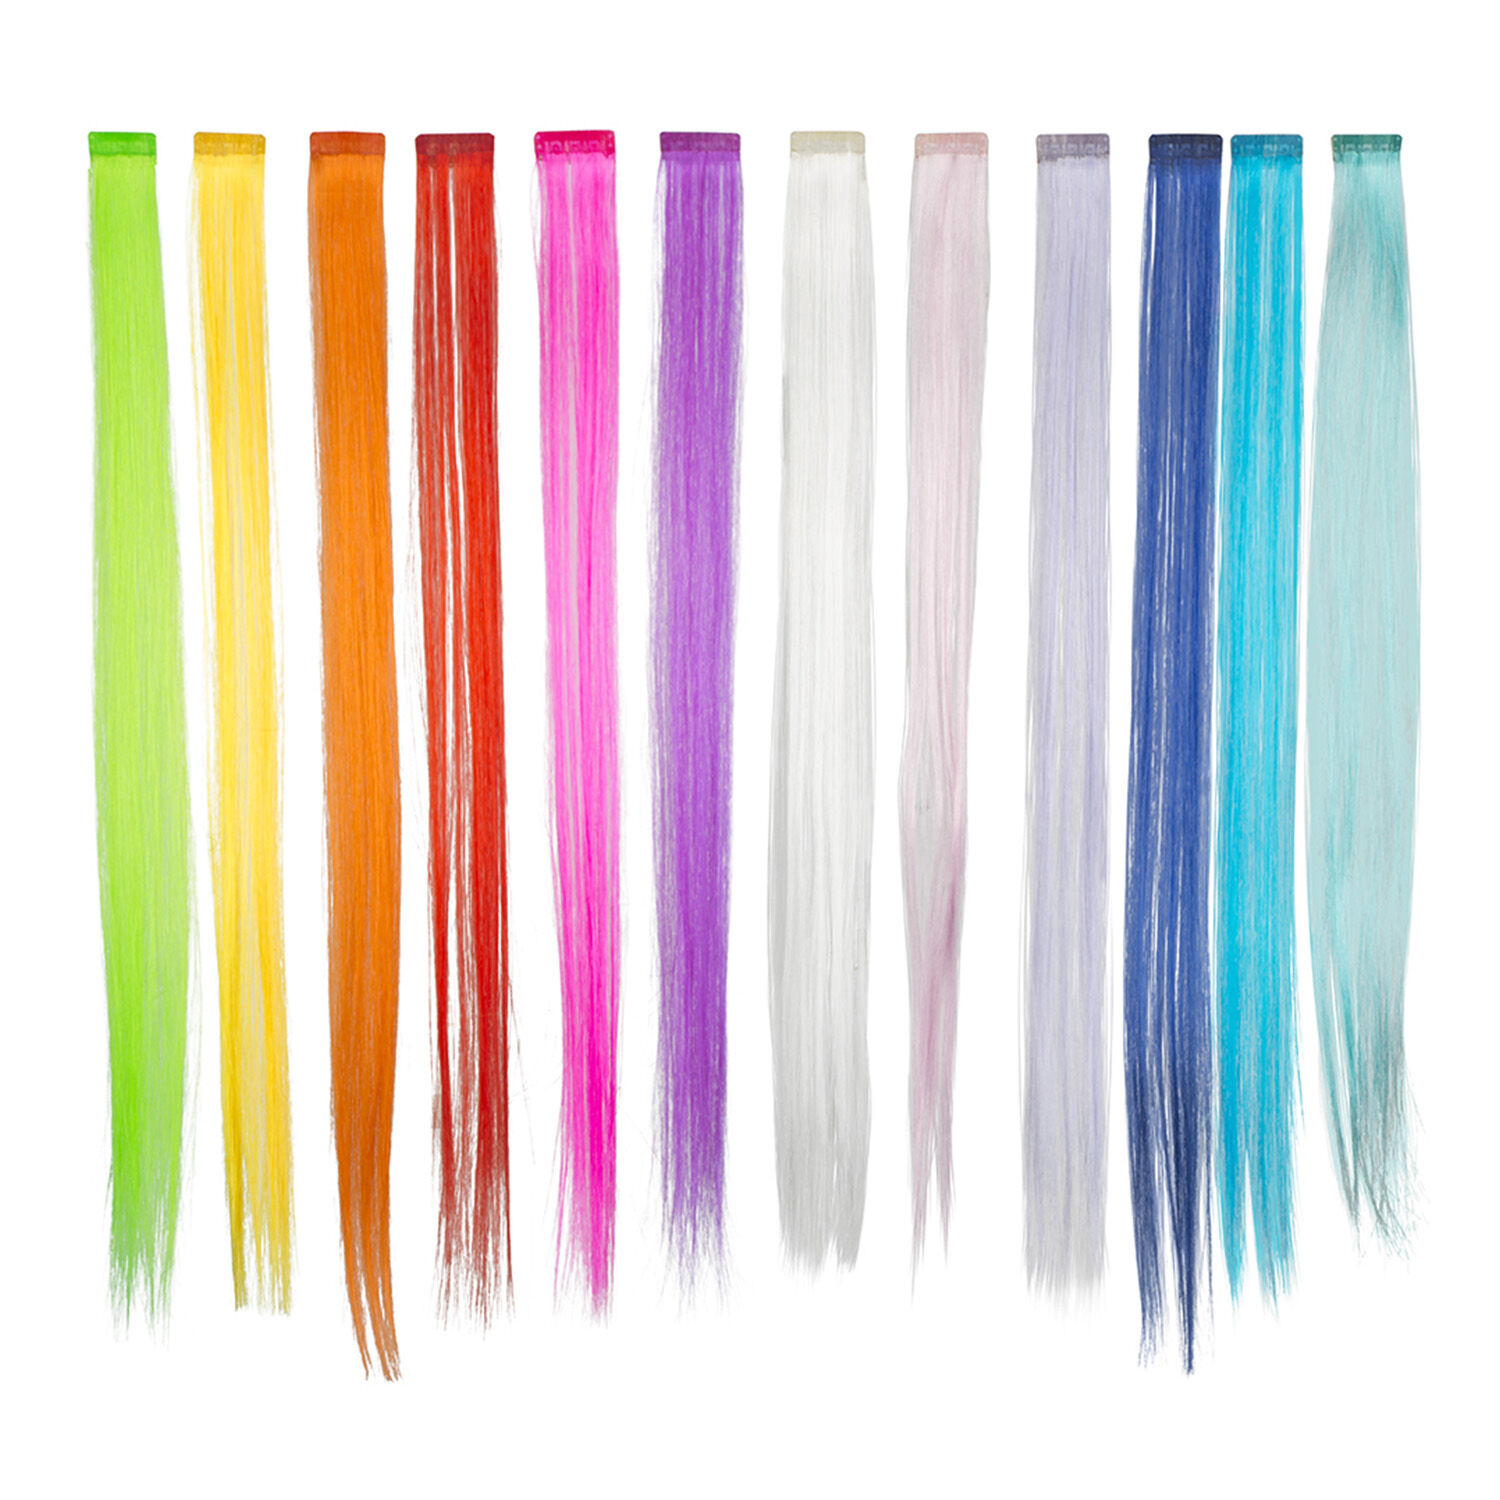 NEU Haarsträhne in verschiedenen Farben, 1 Stück, 12-farbig sortiert Bild 3